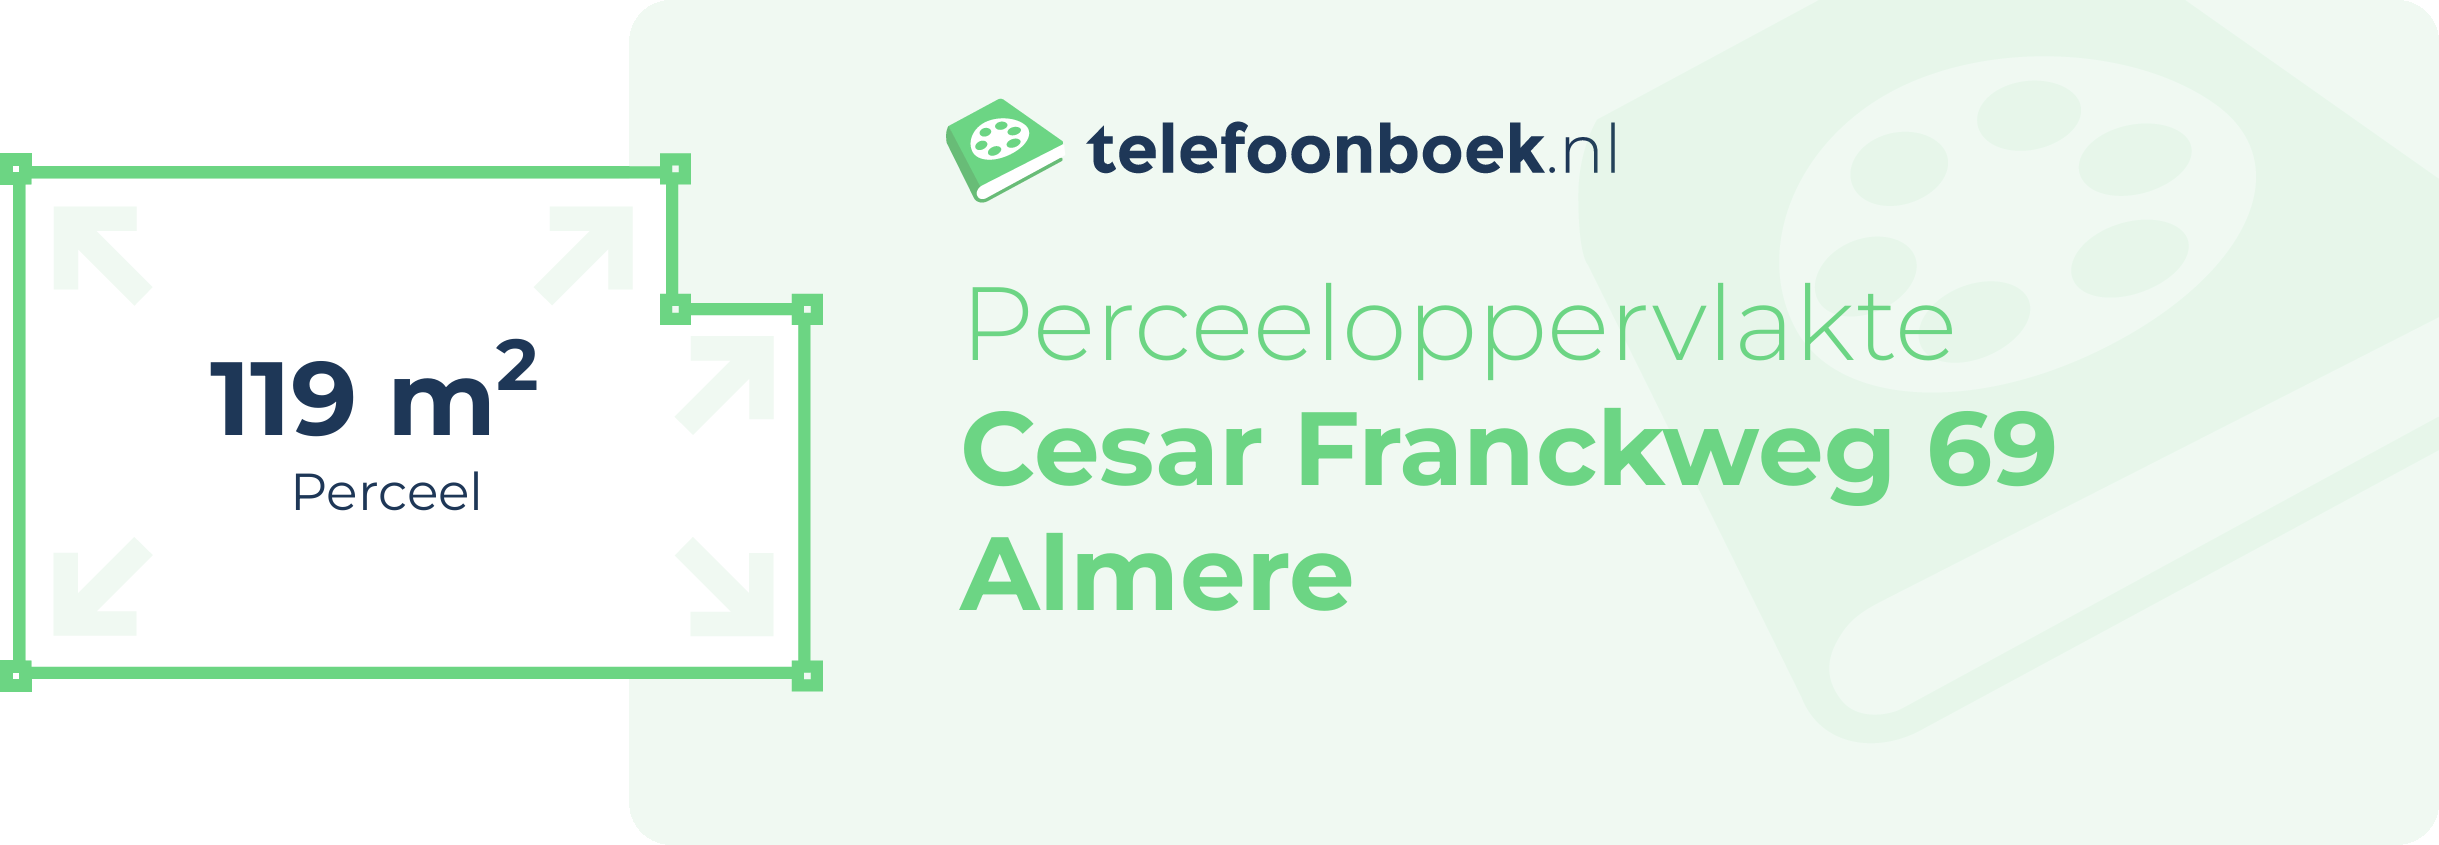 Perceeloppervlakte Cesar Franckweg 69 Almere